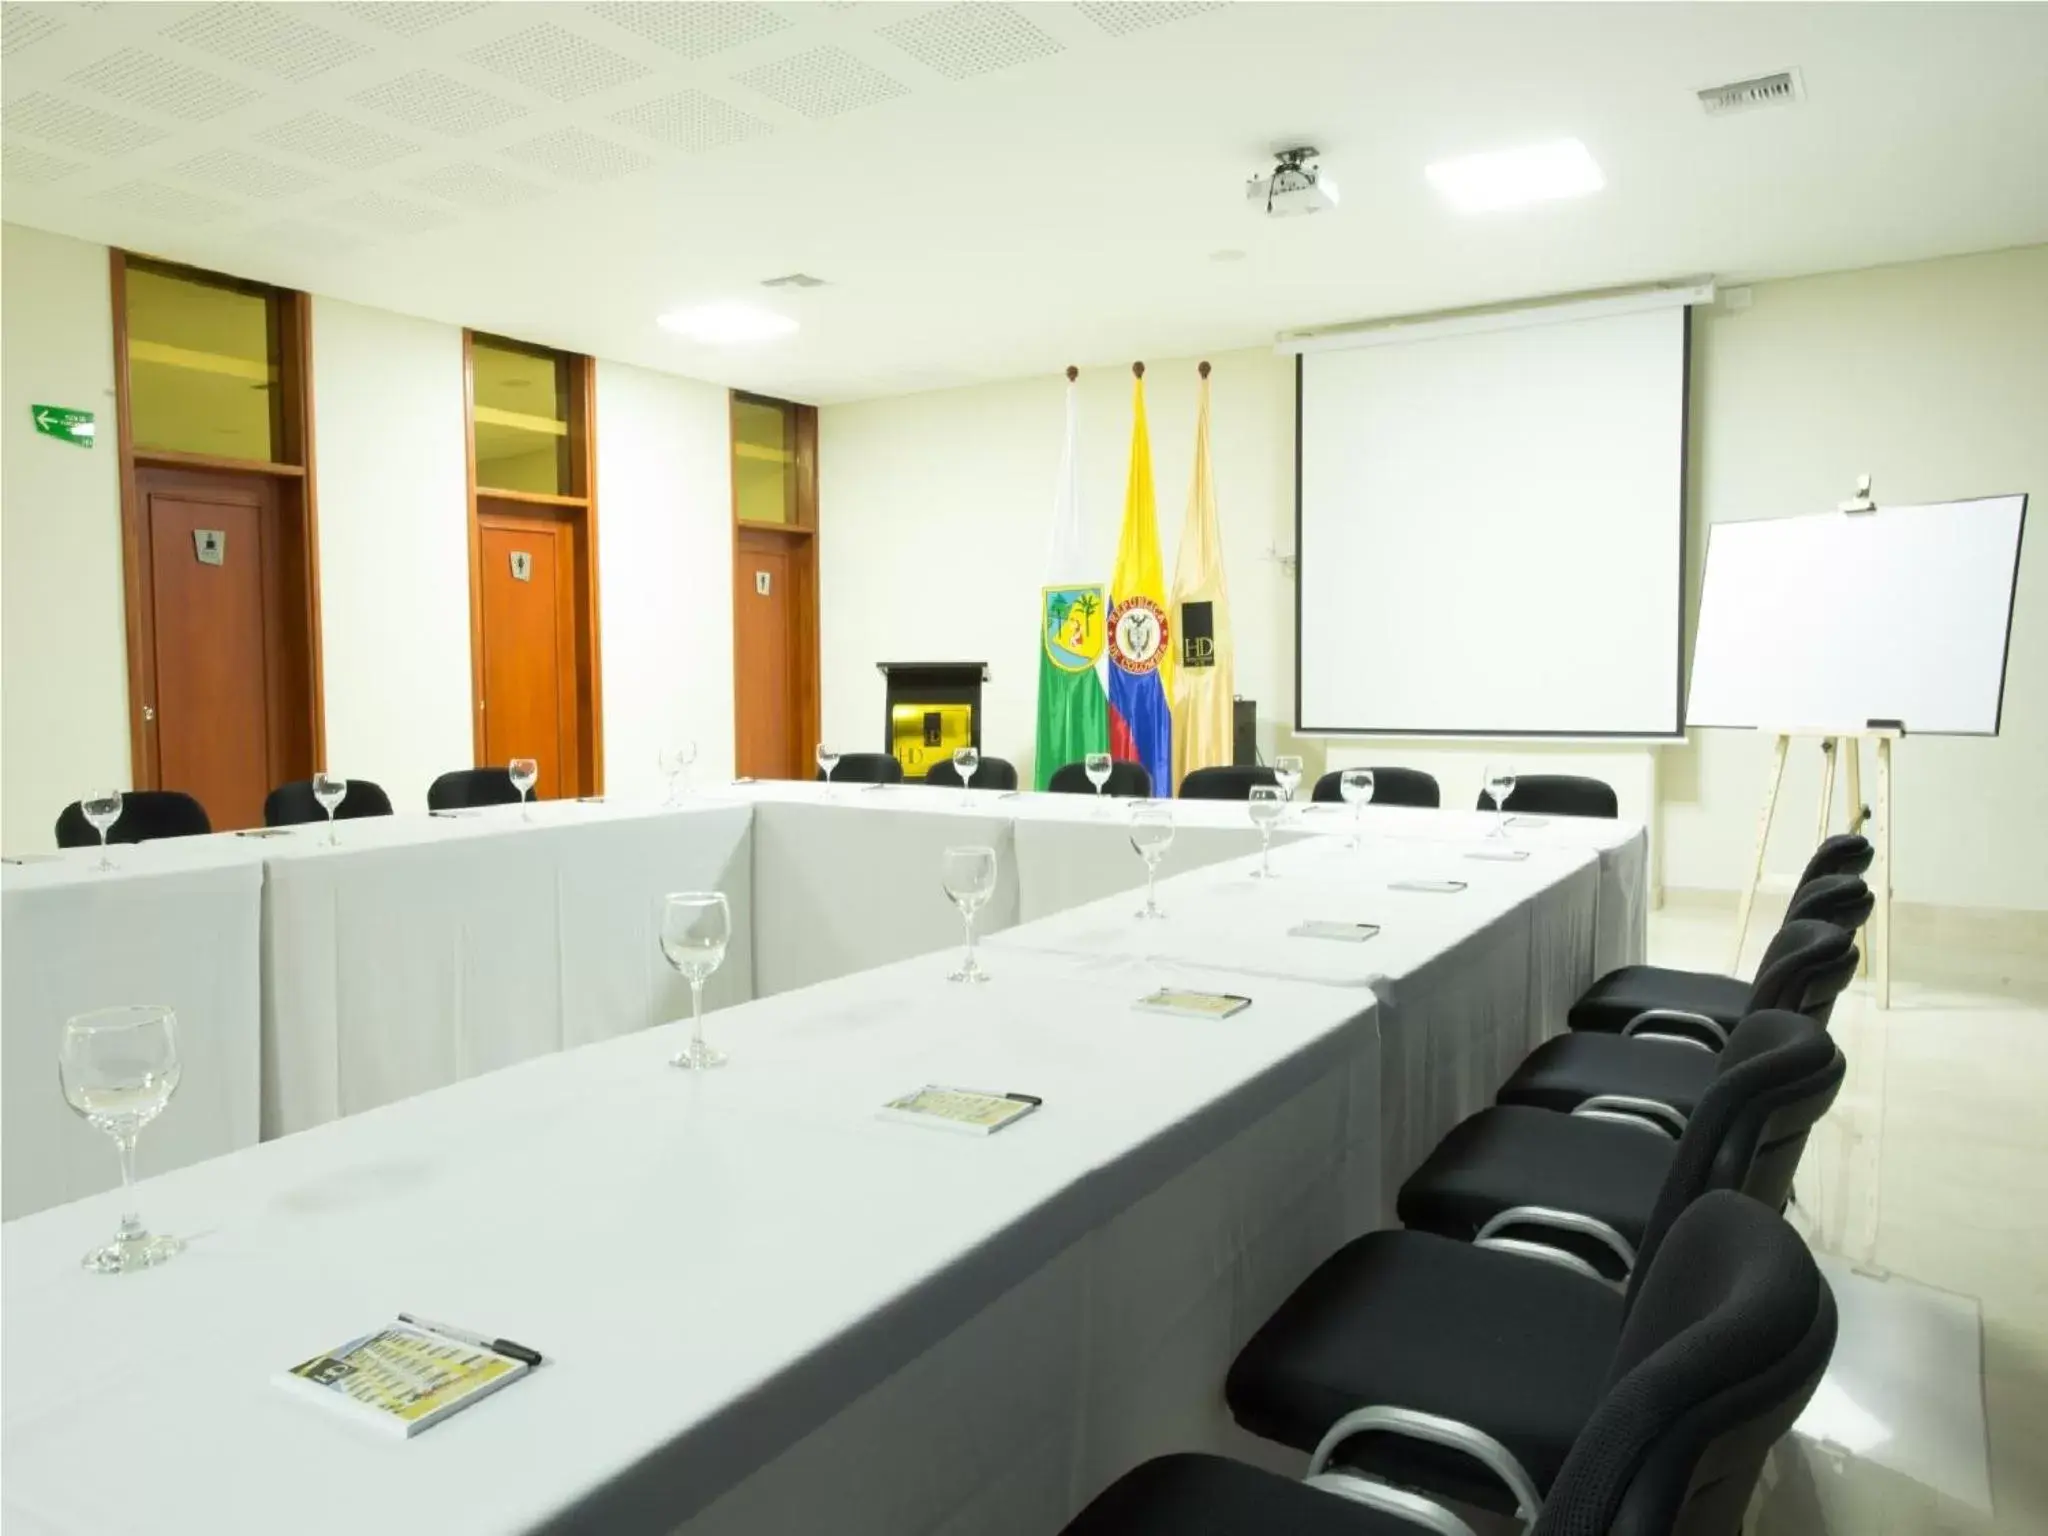 Meeting/conference room in Hotel Dorado La 70